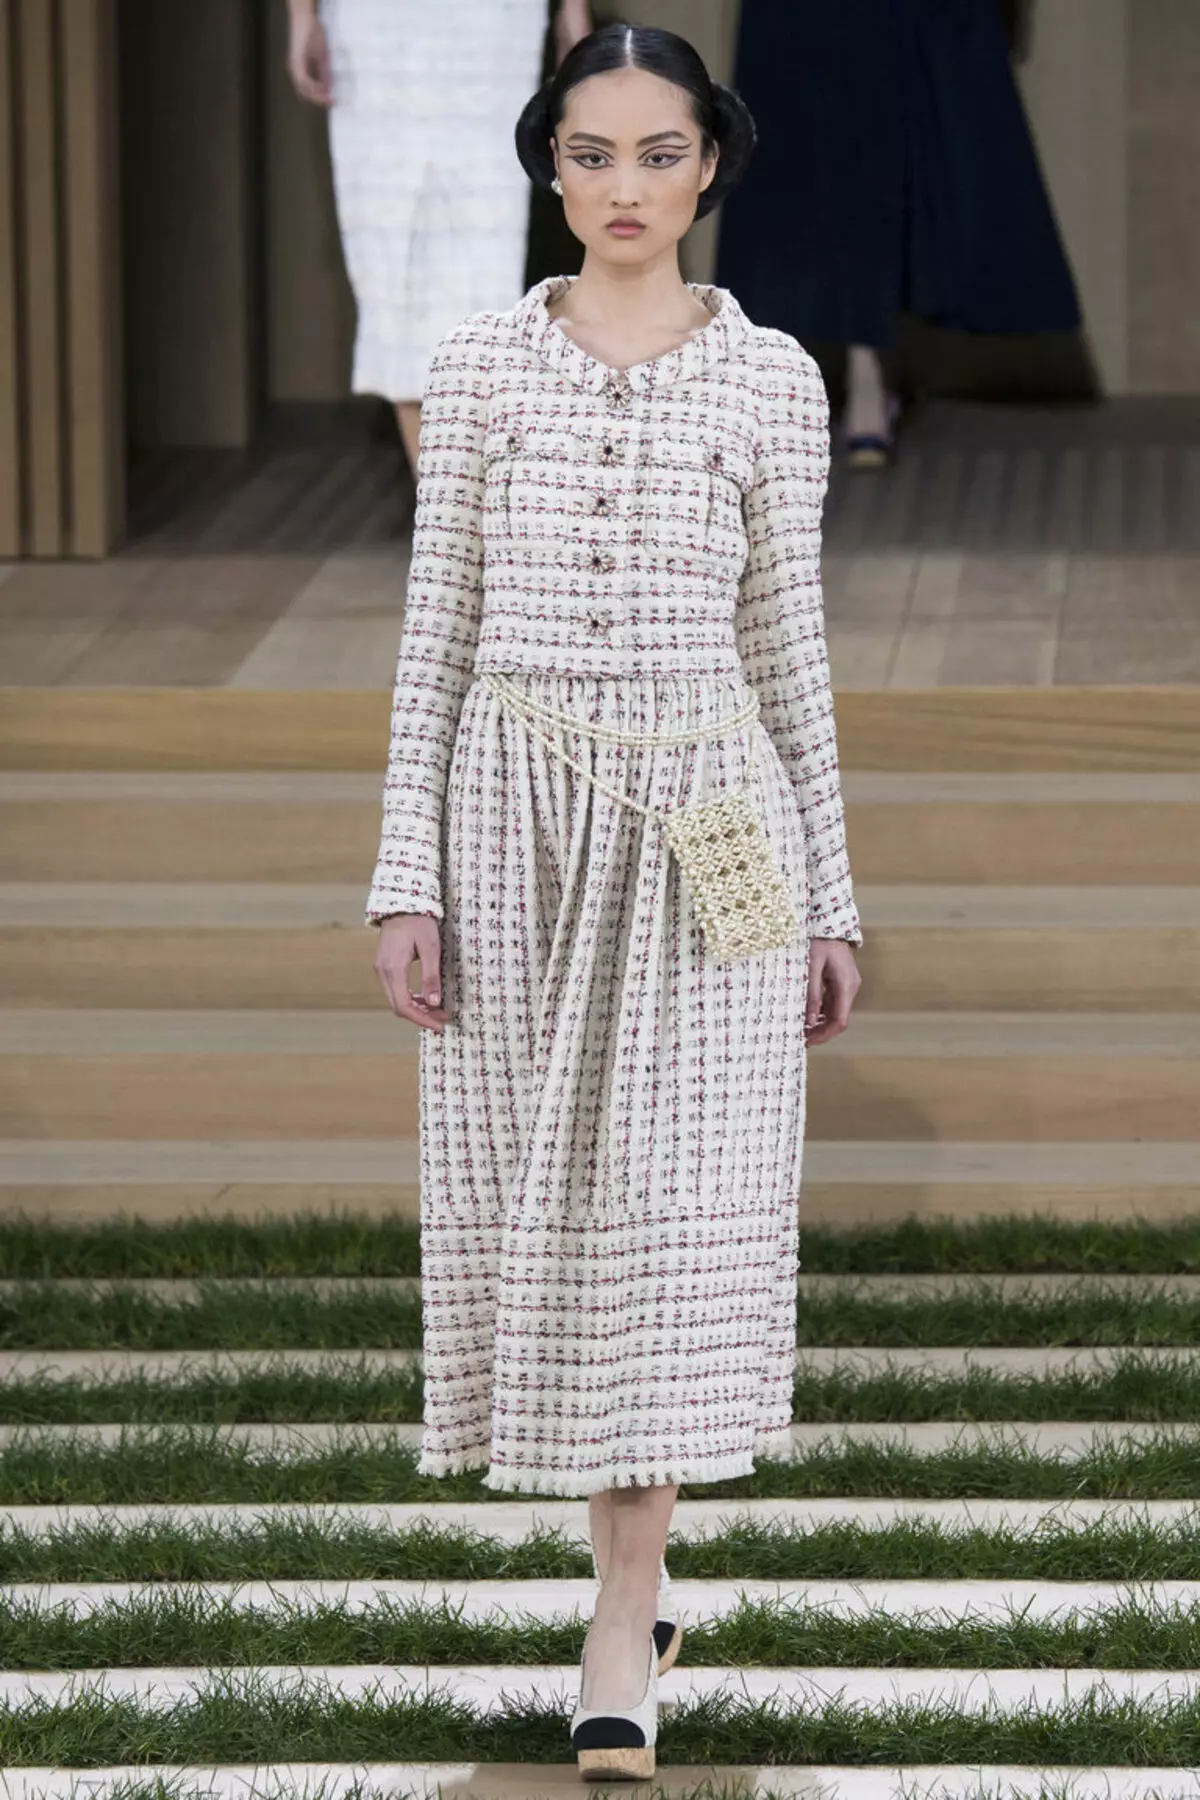 Tweedy sukienka od Coco Chanel z rękawami